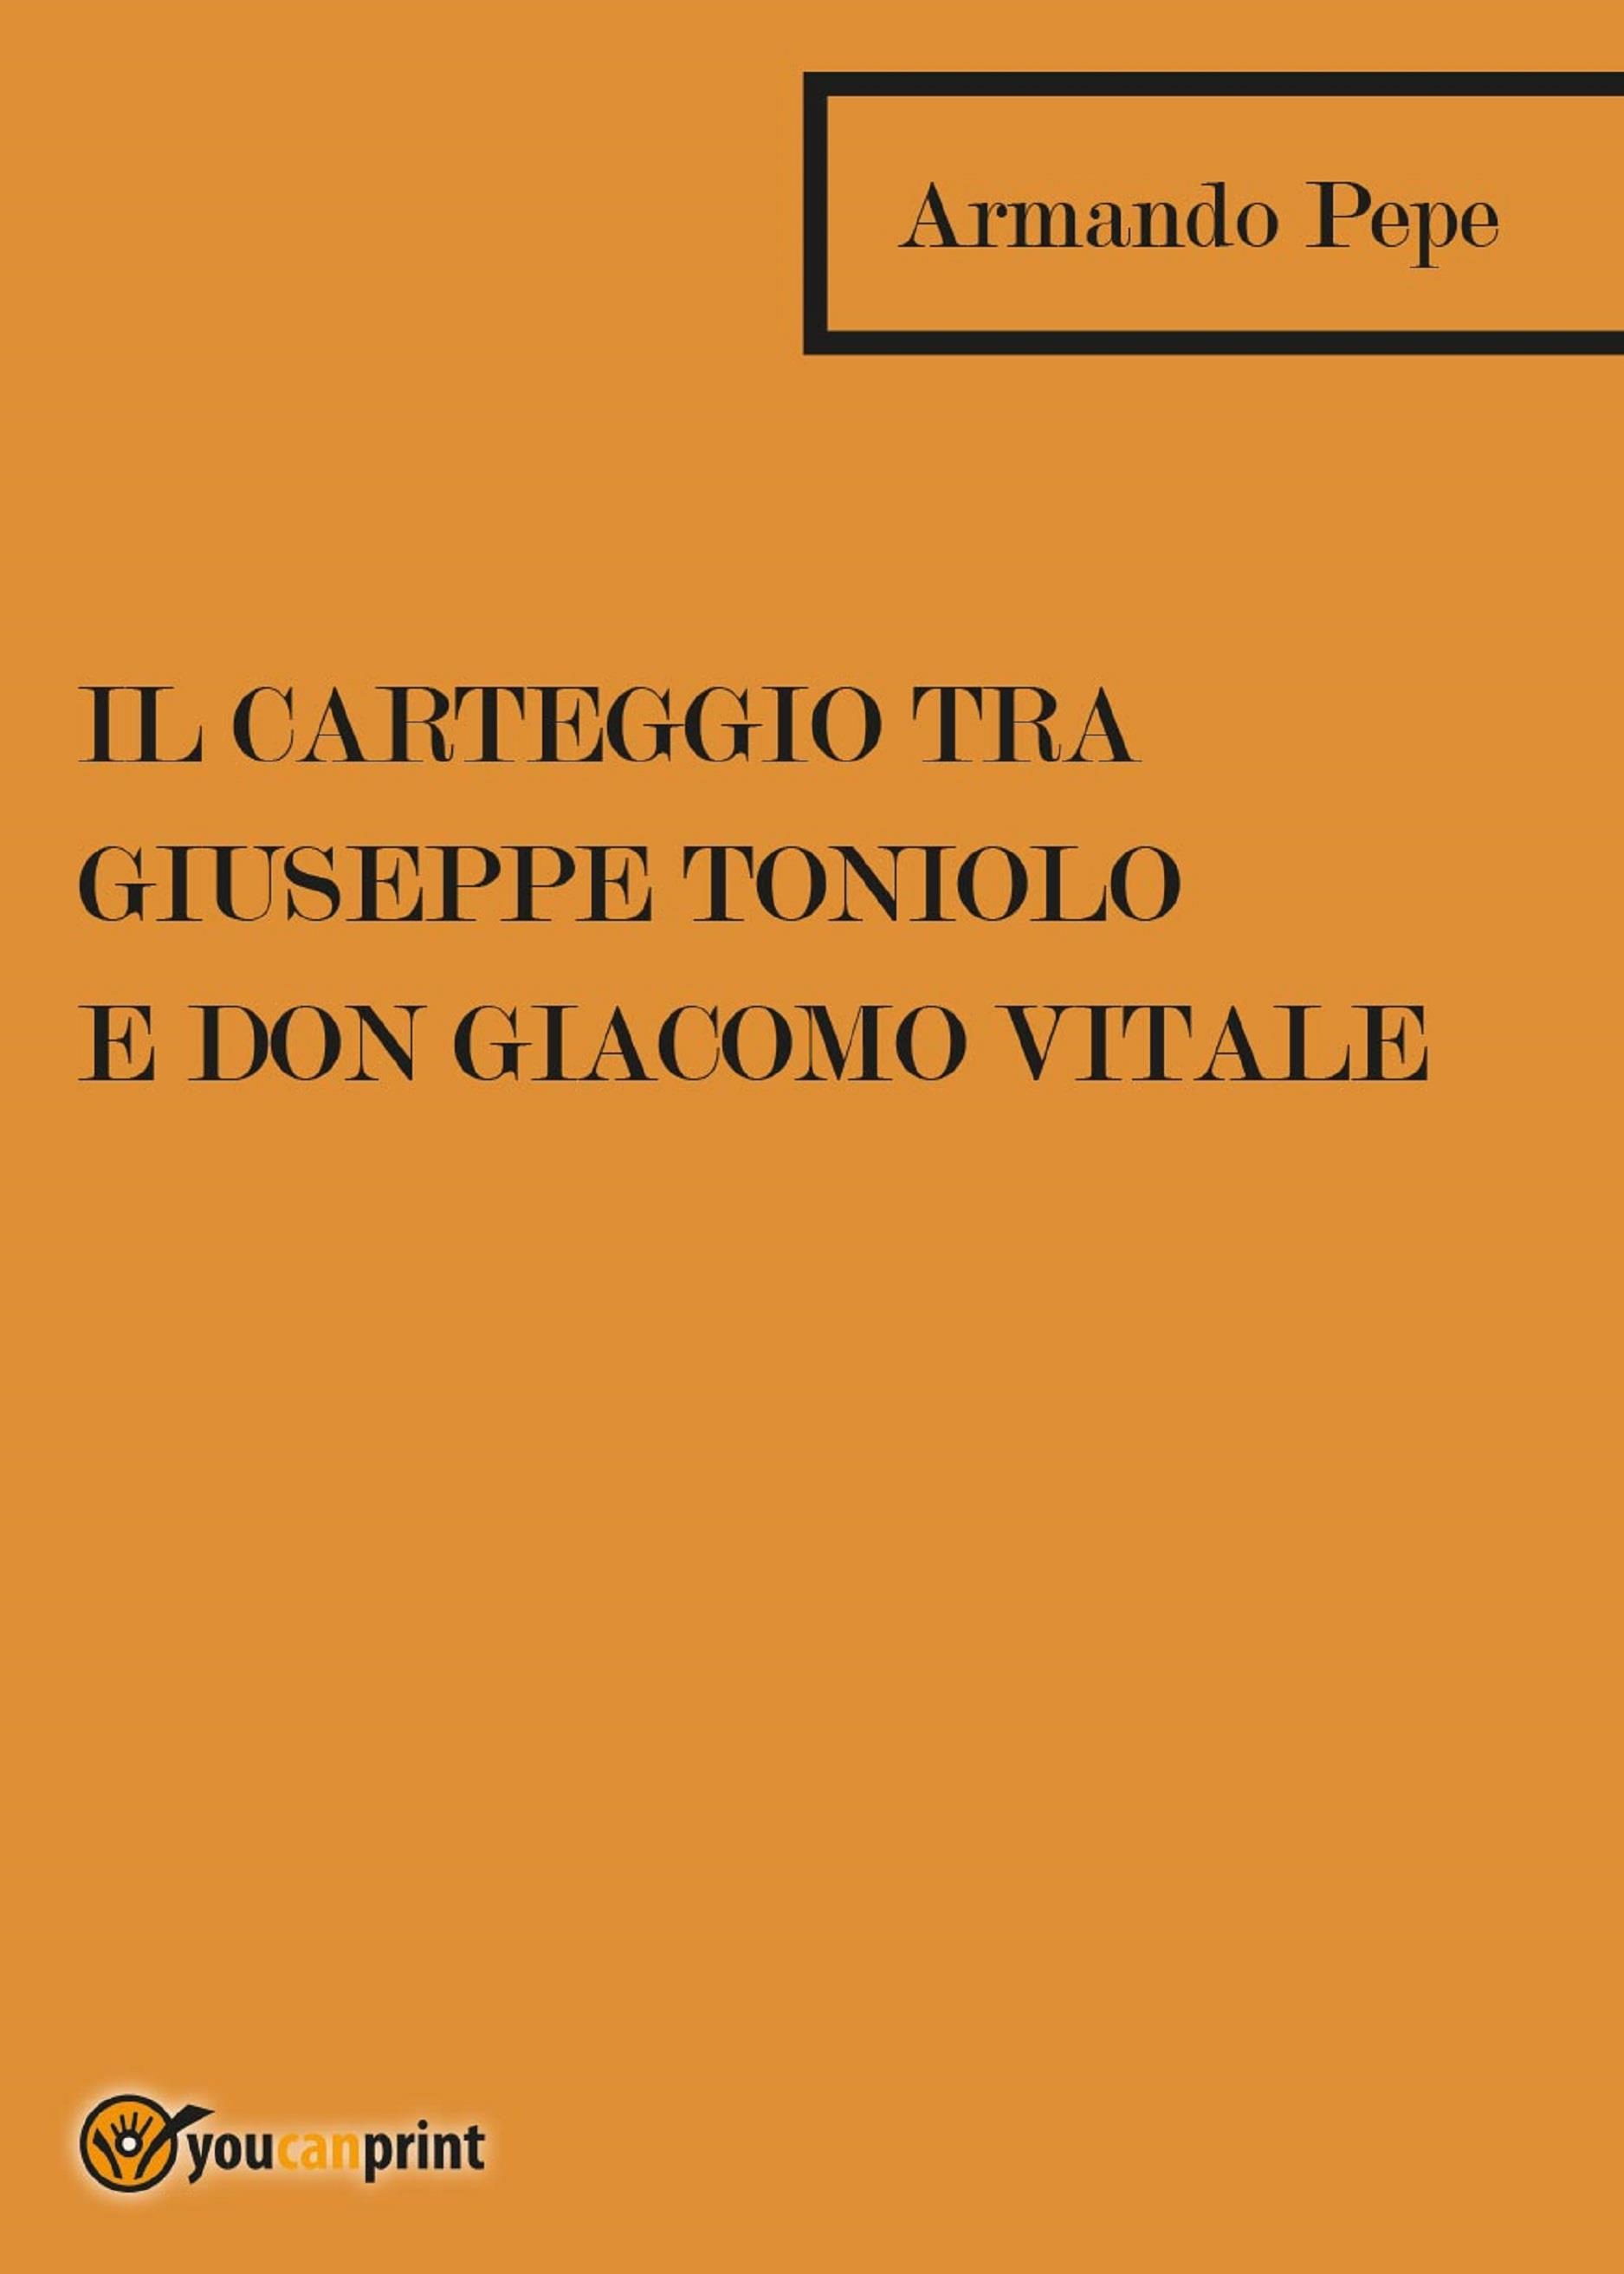 Il carteggio tra Giuseppe Toniolo e don Giacomo Vitale